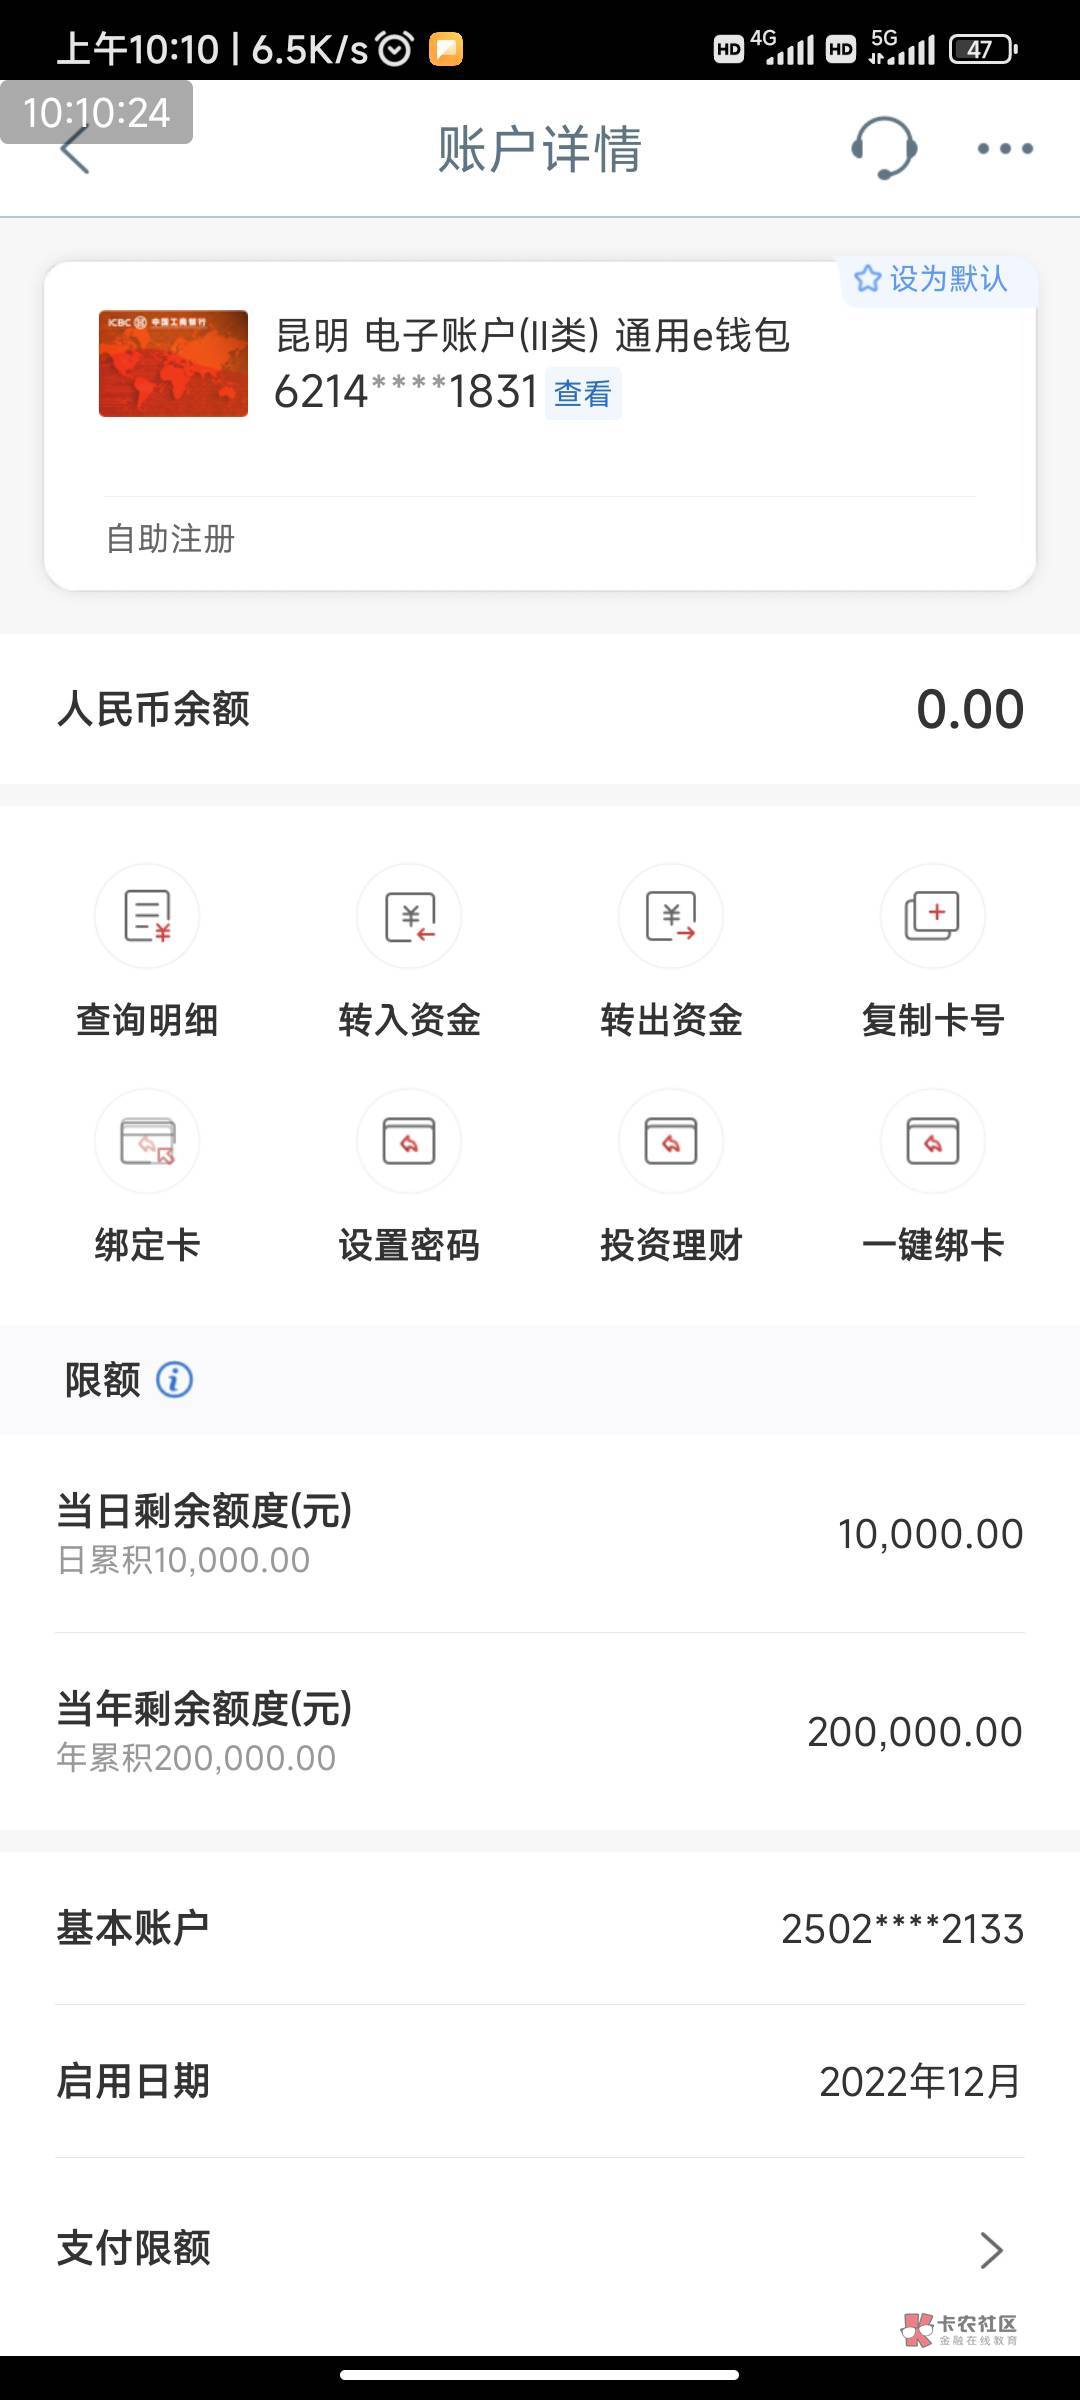 网点核实终于云南的100块钱给搞定了



27 / 作者:我一个人流浪 / 